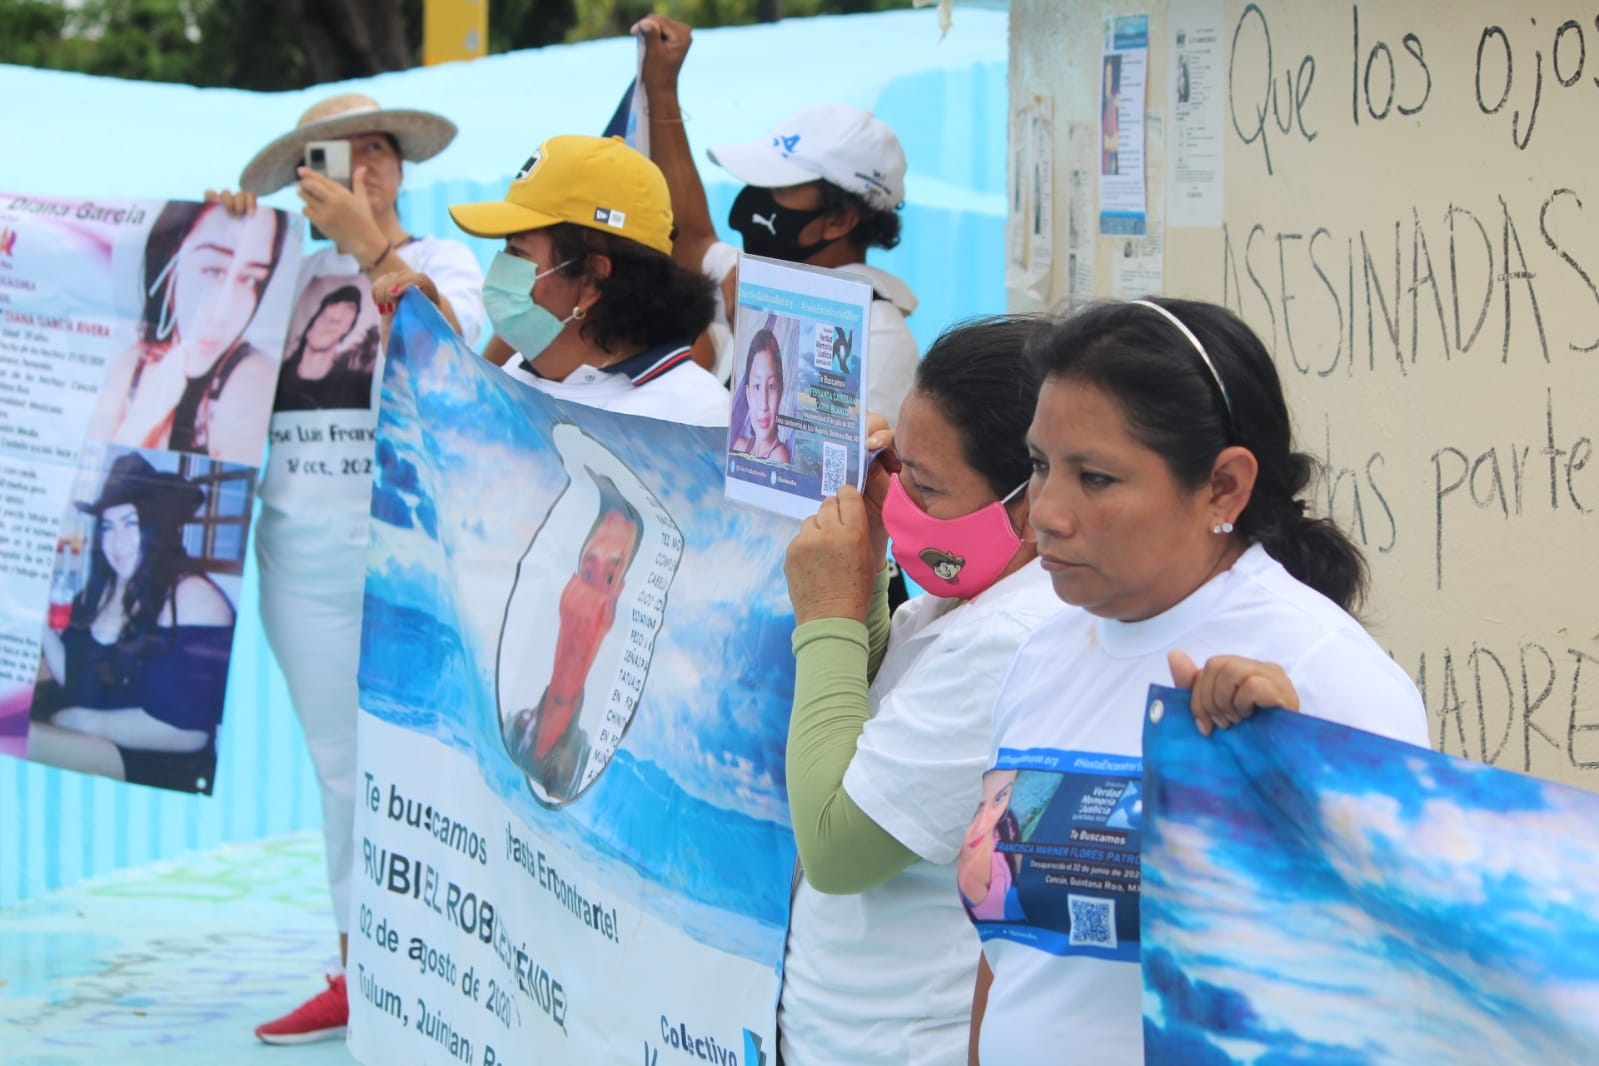 Colectivo de búsqueda exige la destitución del Fiscal de Quintana Roo; lo llaman incapaz